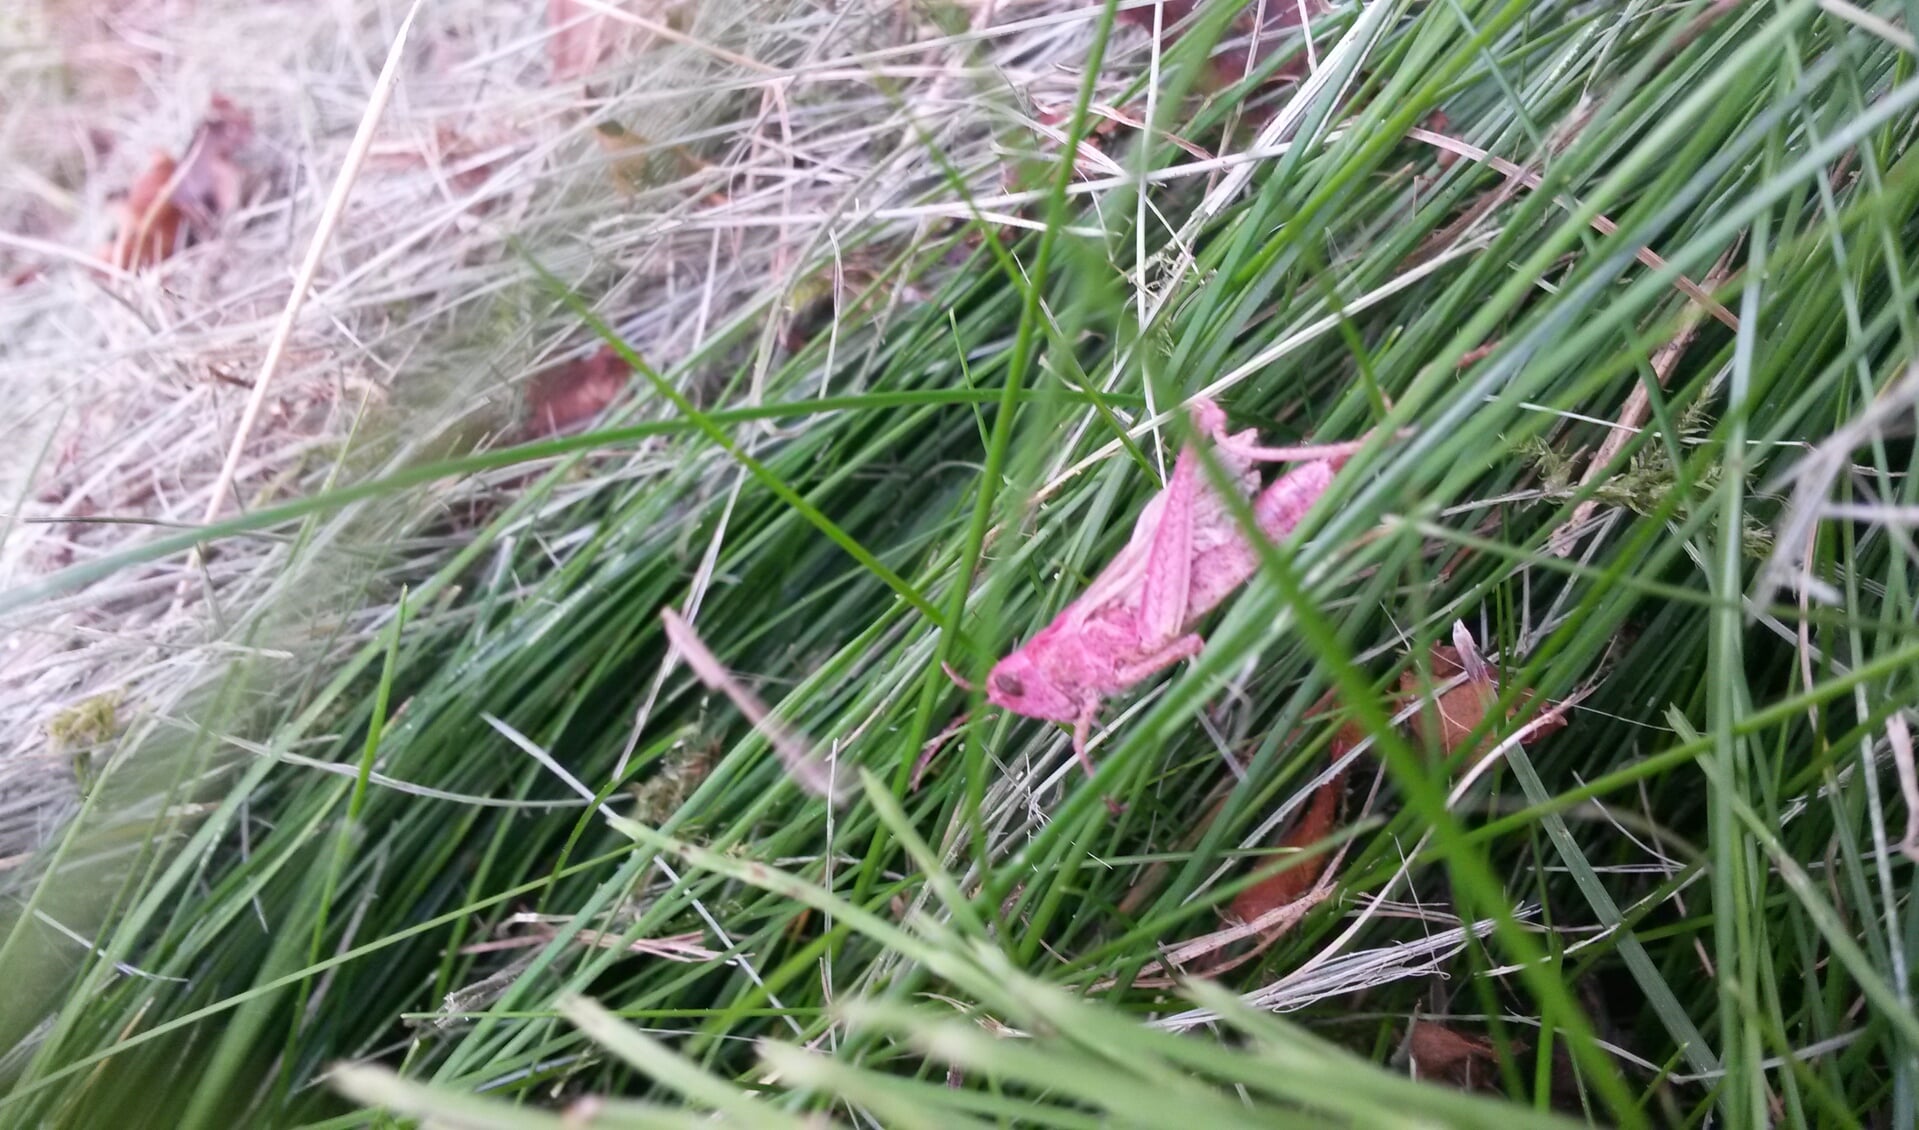 De roze sprinkhaan die op de locatie Vlinderstruik aan de Lodewijk van Deysselhof werd gevonden, is waarschijnlijk geen rosse sprinkhaan. 